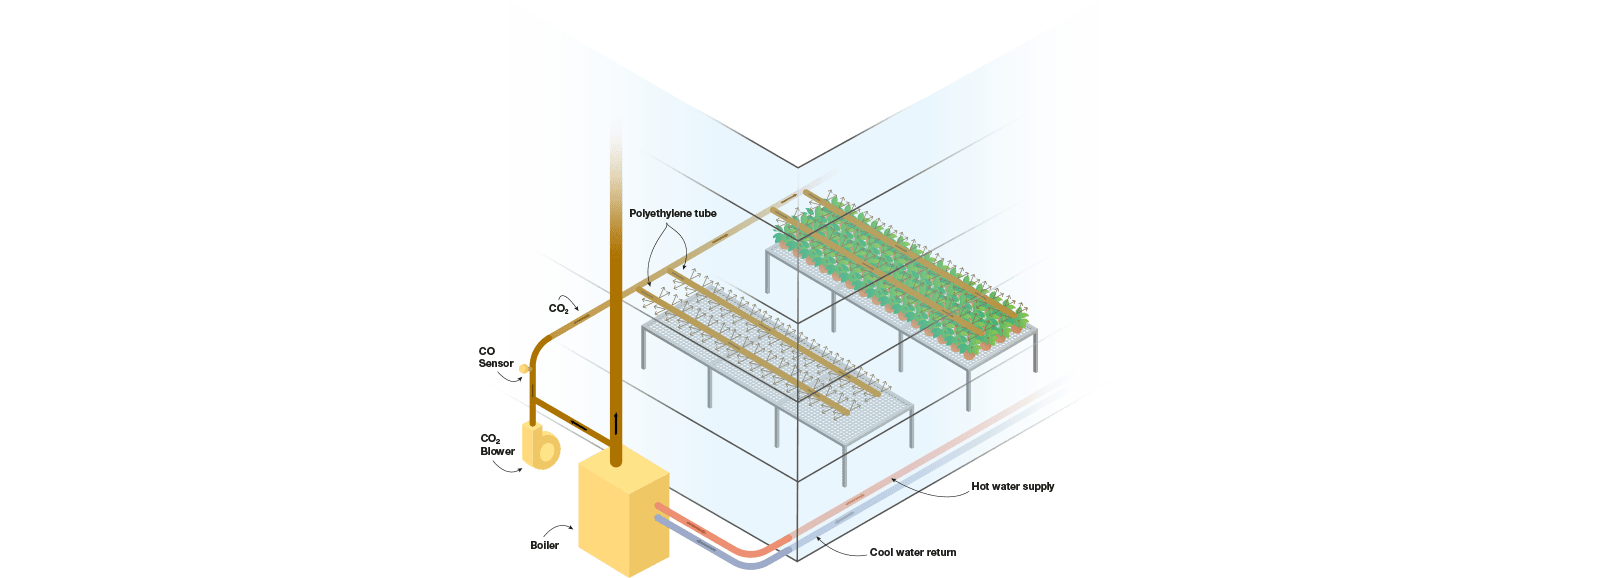 Prinzip der CO2-Verteilung in einem Gewächshaus - Schema